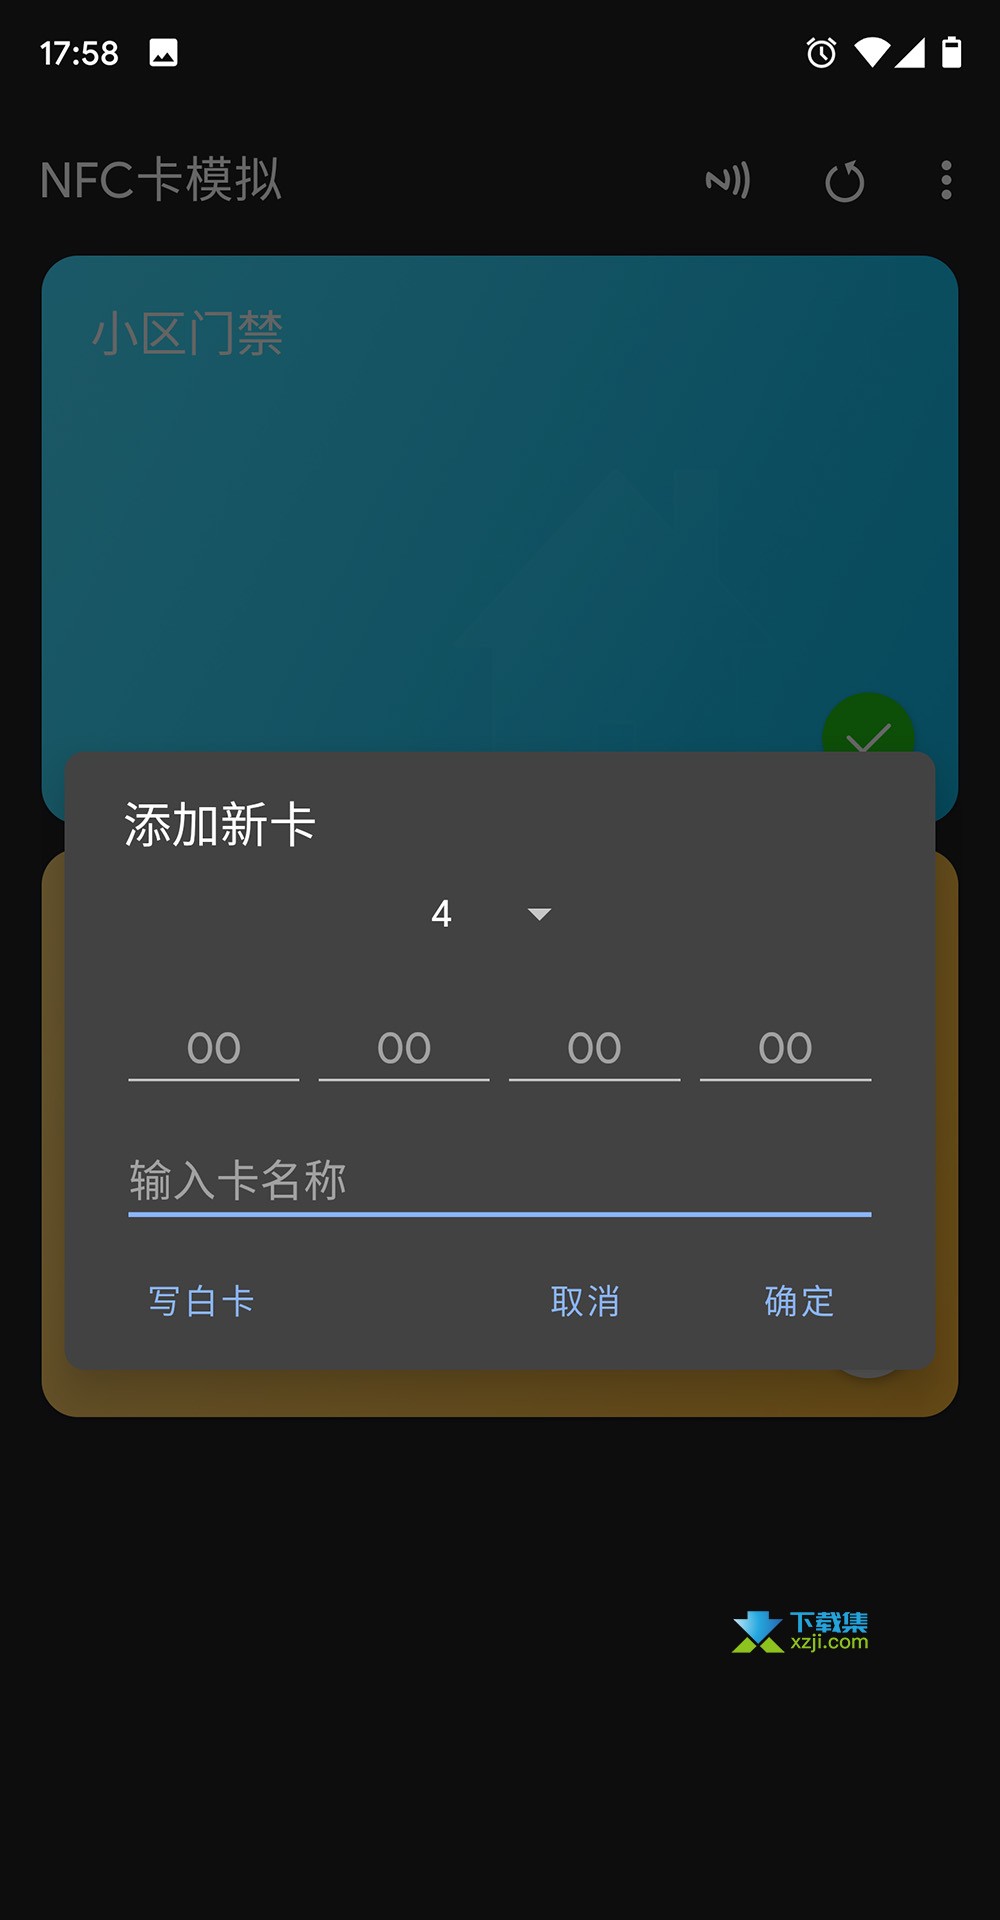 NFC卡模拟界面2